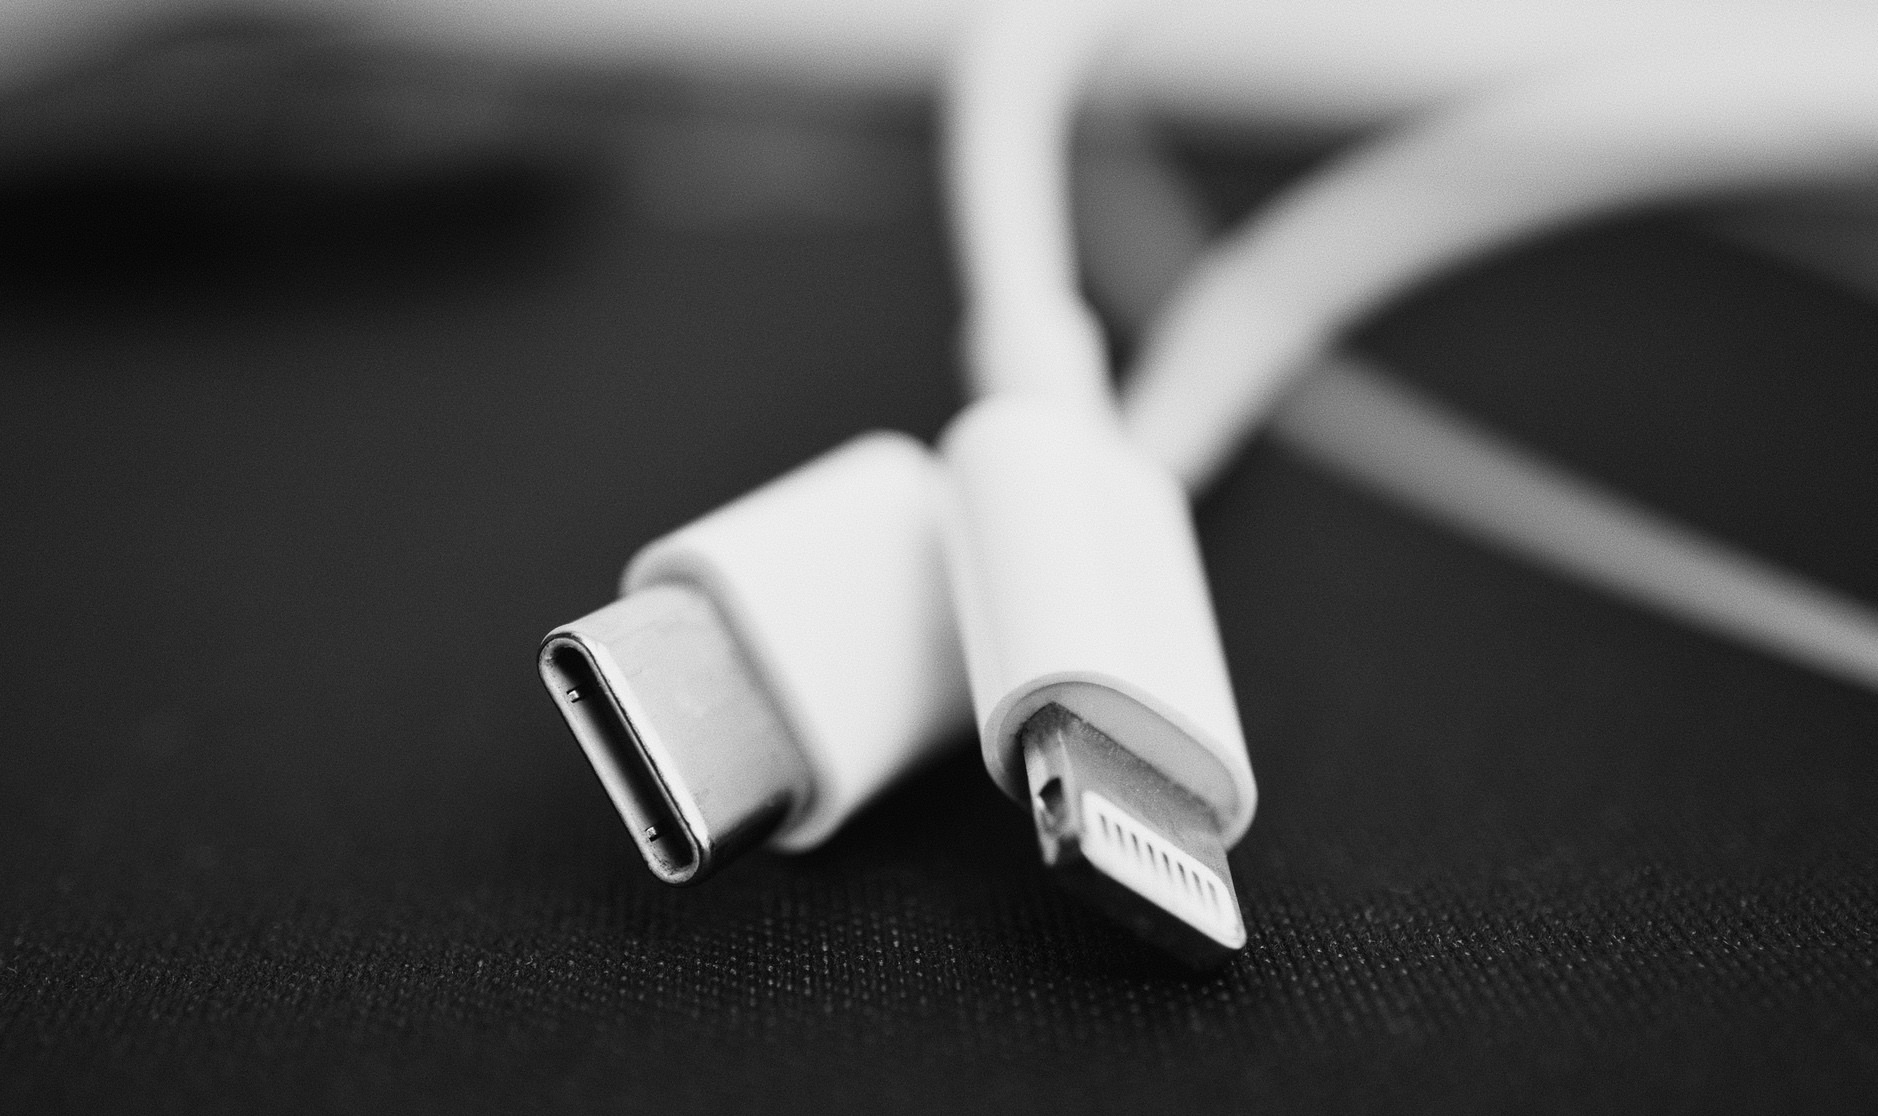 Bild zeigt zwei weiße Kabel. Ein Kabel mit USB-C-Anschluss. Das andere Kabel mit Lightning-Port.